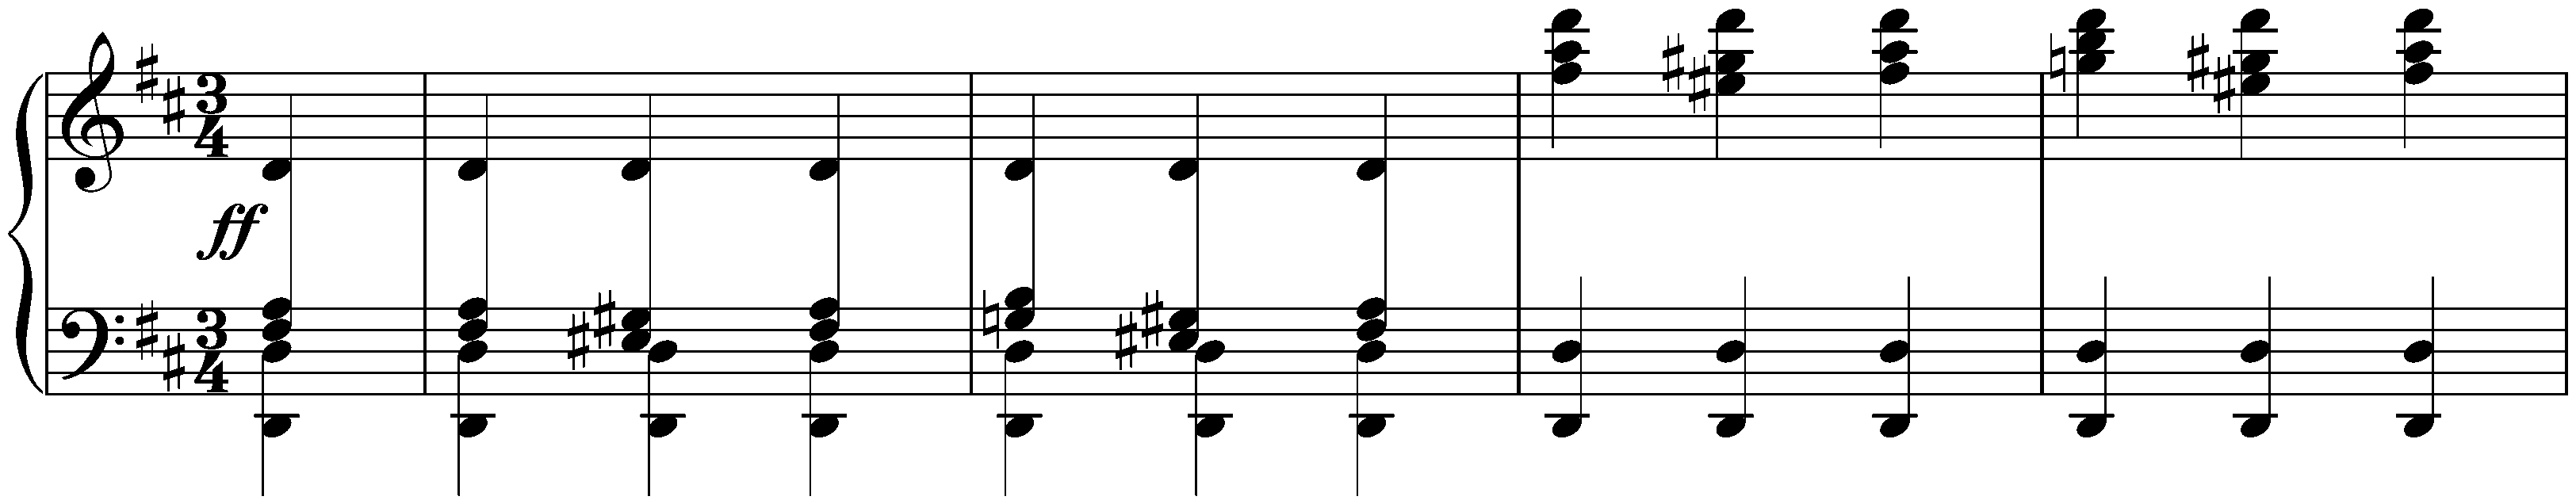 Twenty Waltzes, D 146; 1. D major